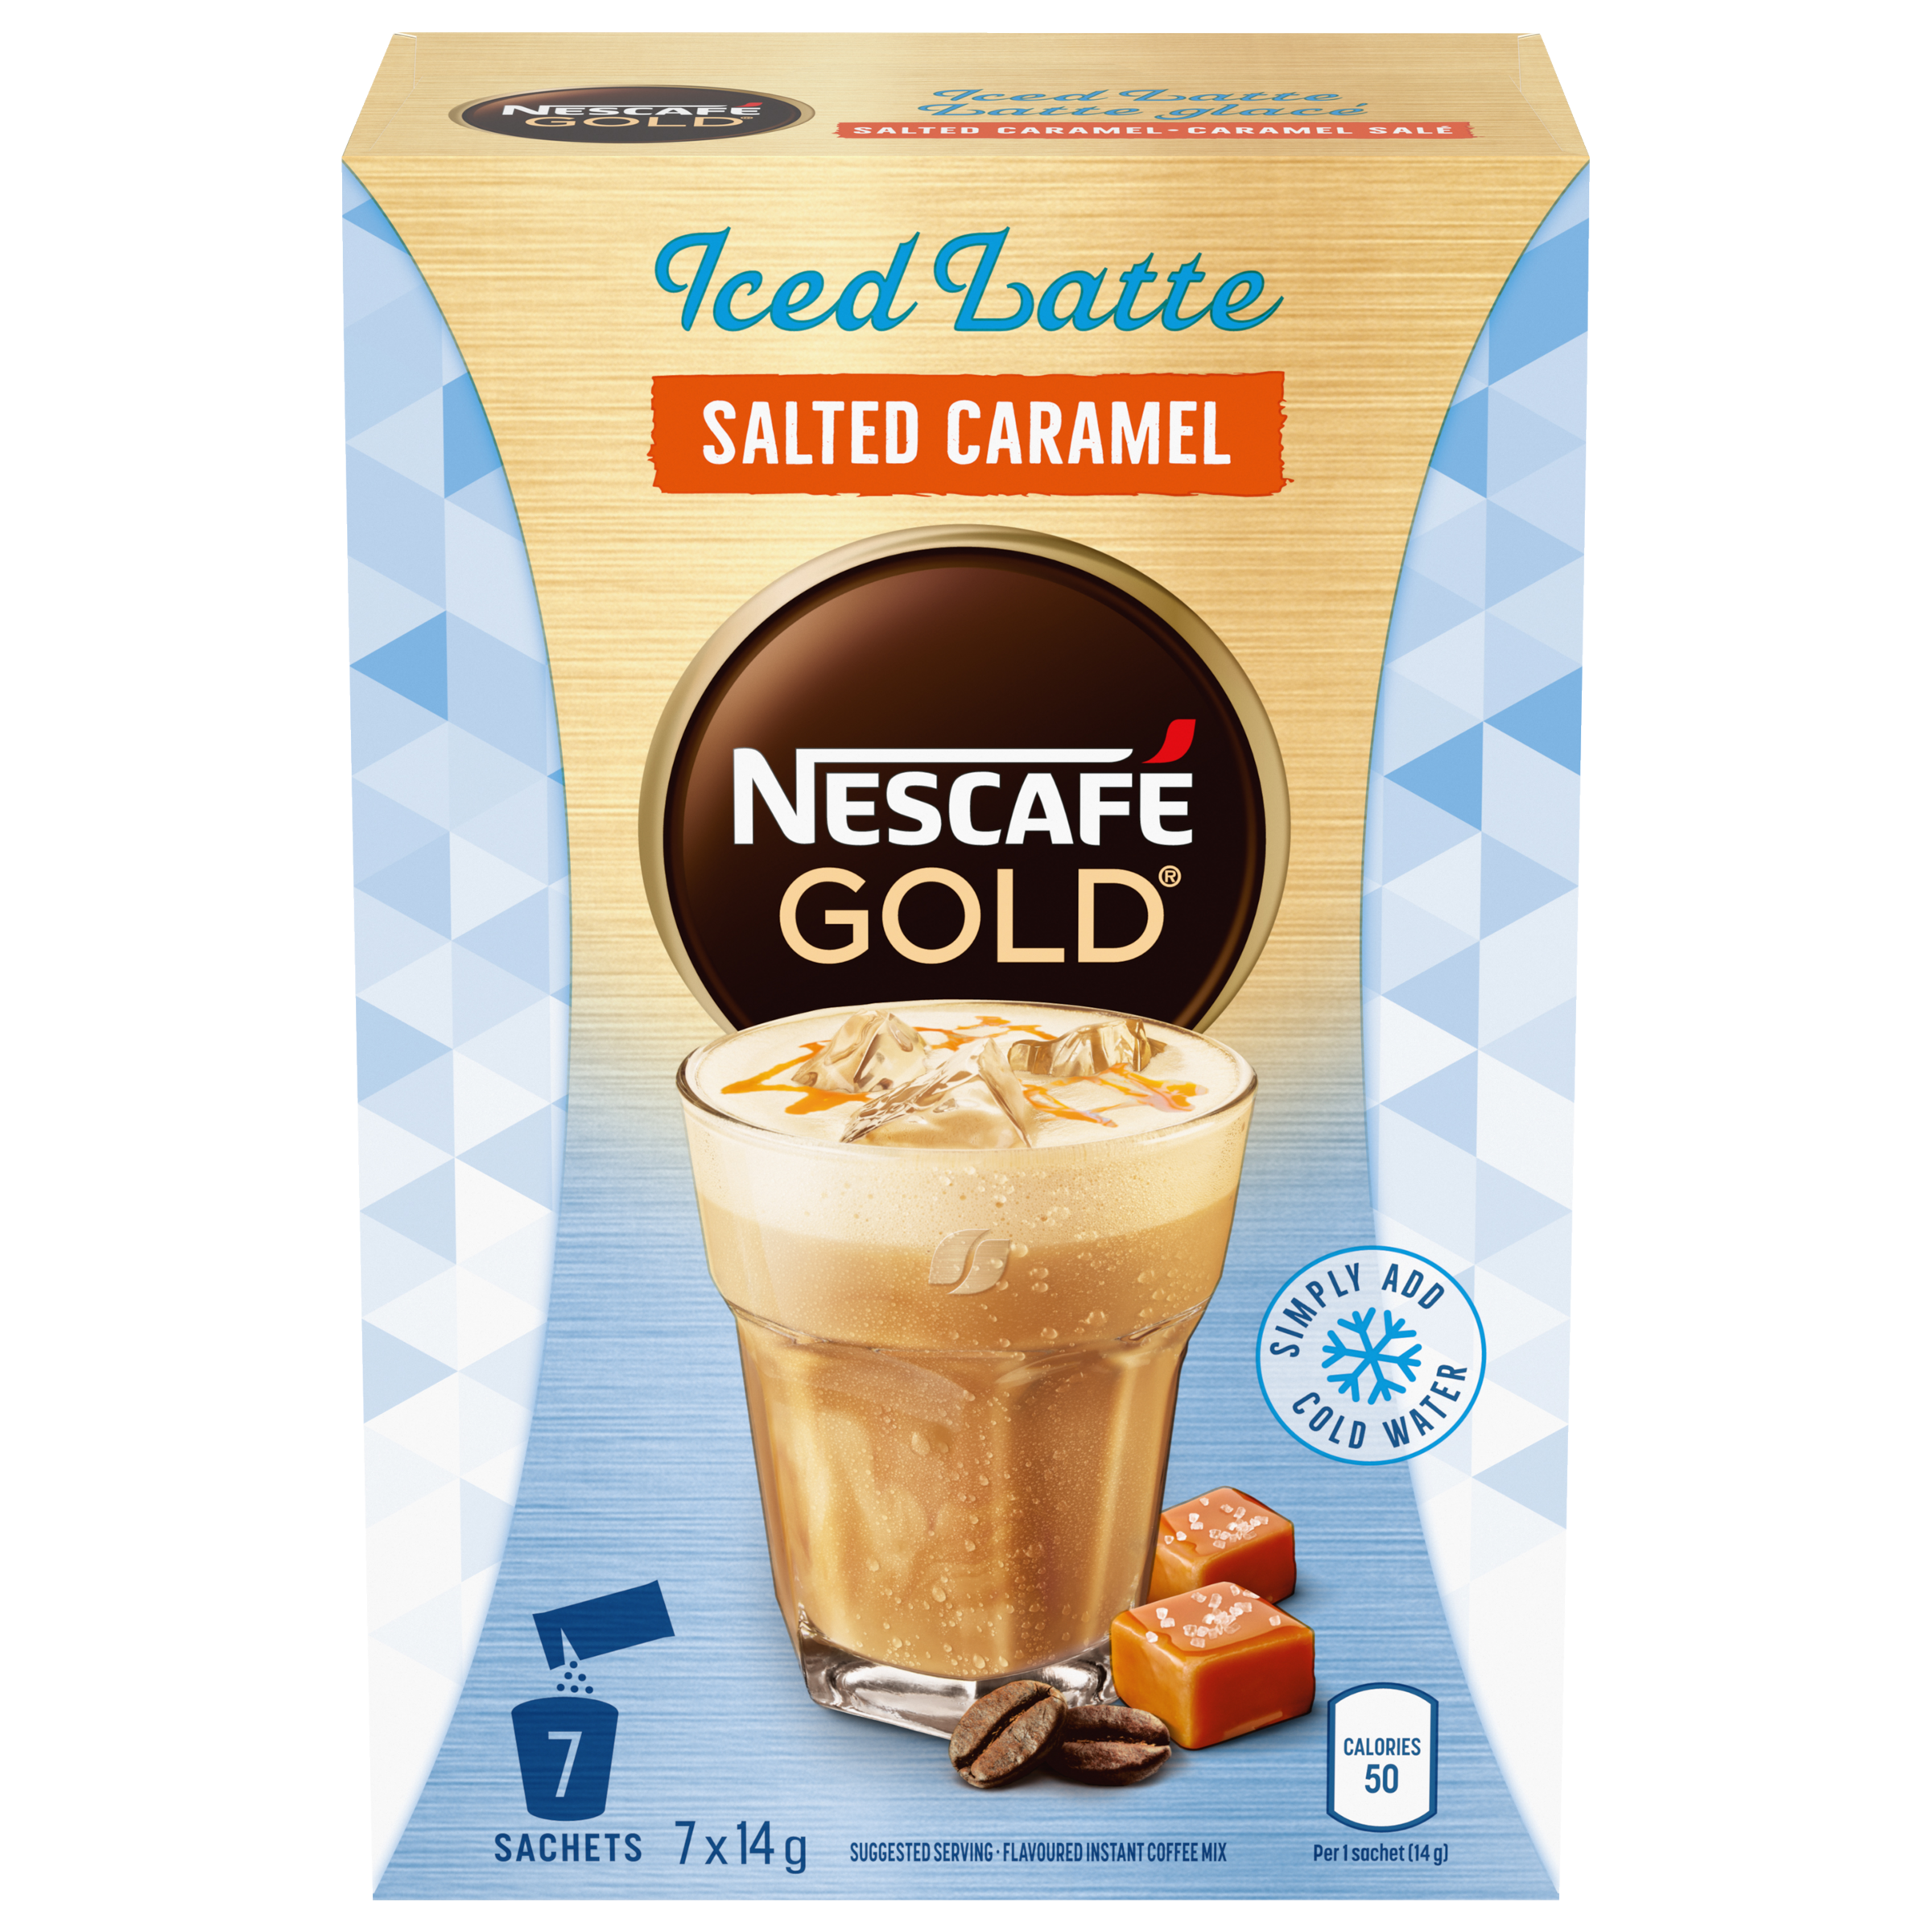 NESCAFÉ GOLD Iced Latte Salted Caramel Carton, 7 x 14 g Sachets